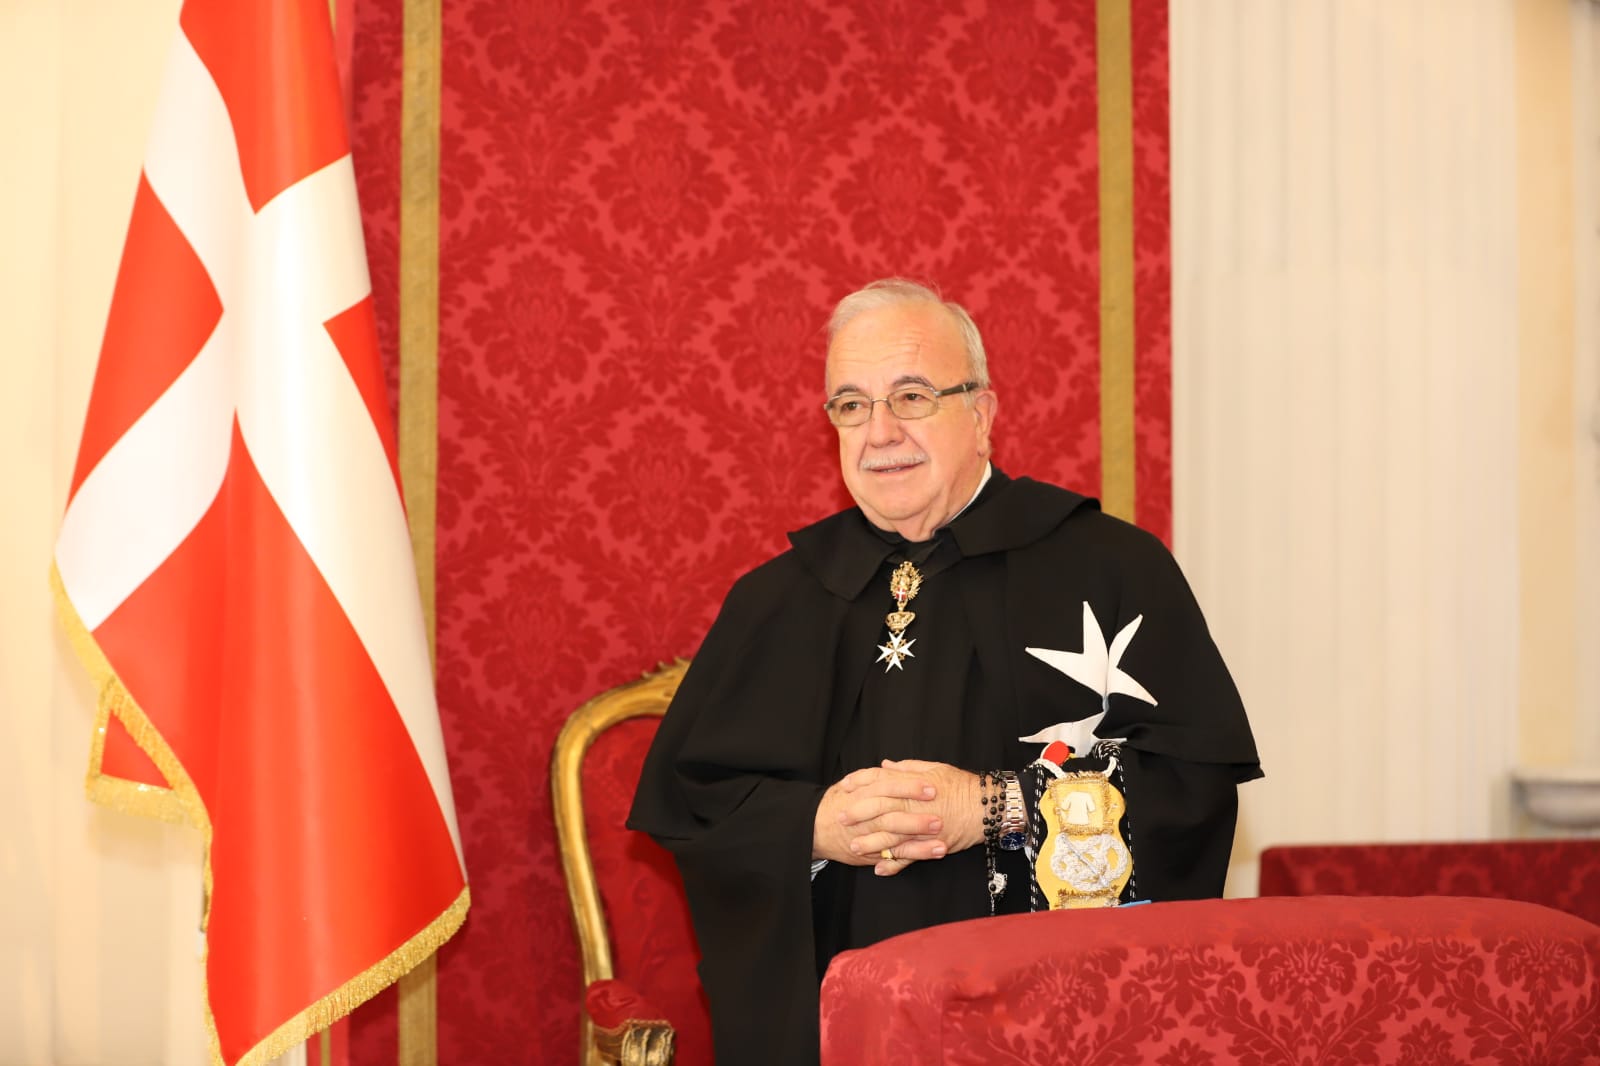 Frey Marco Luzzago elegido Lugarteniente del Gran Maestre de la Soberana Orden de Malta